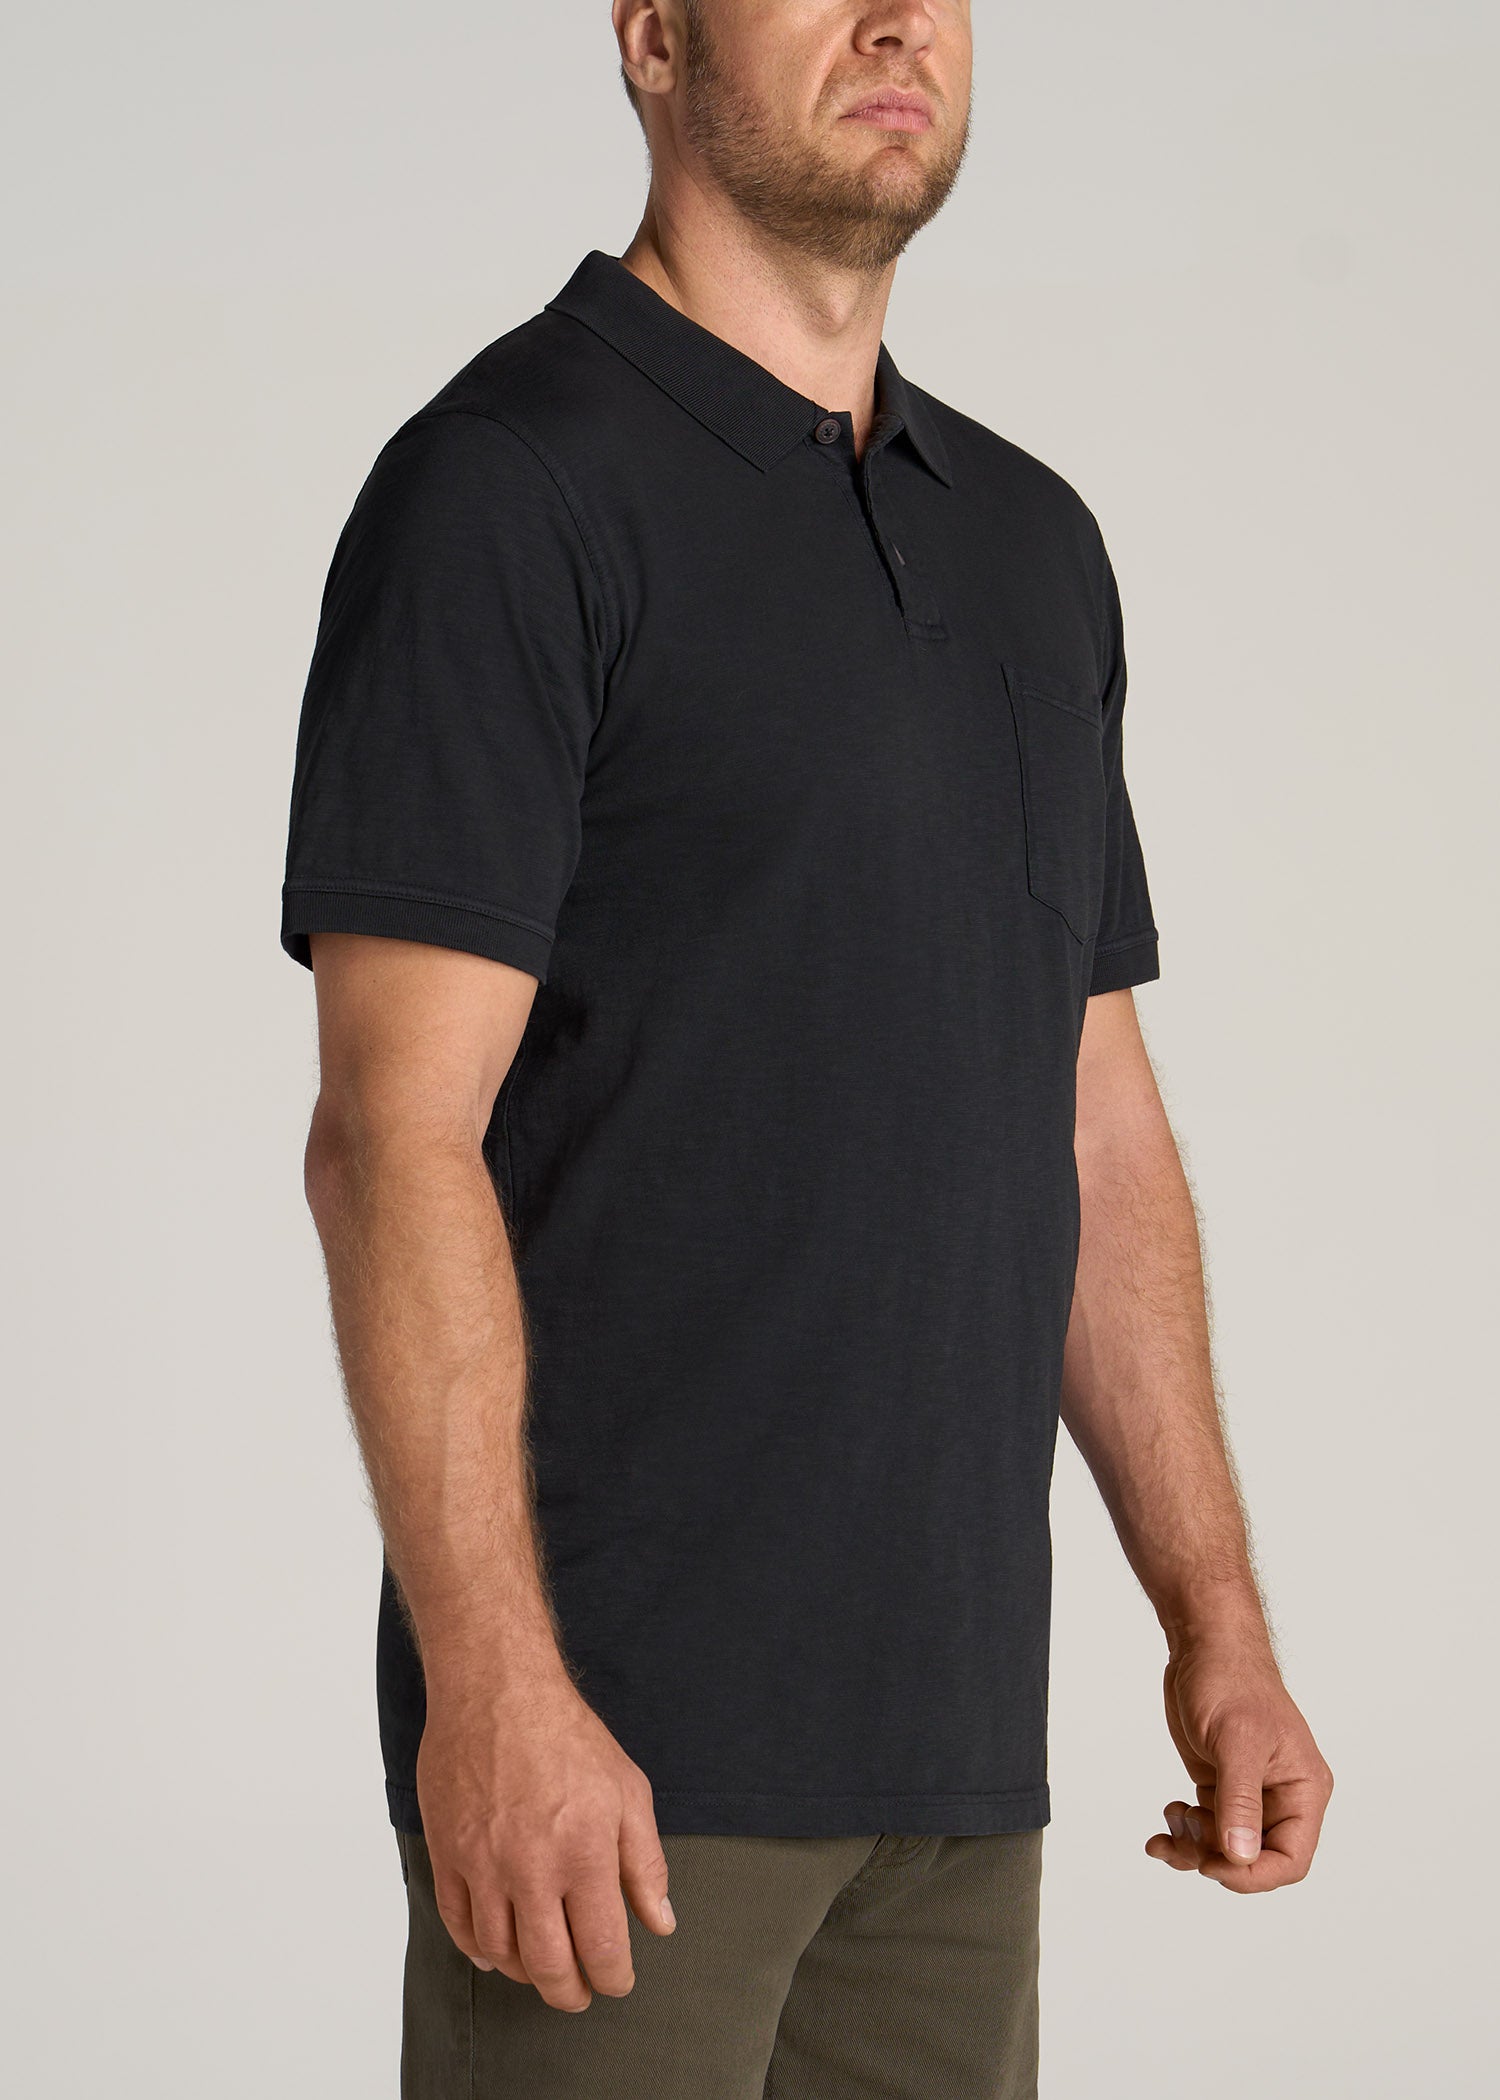         American-Tall-Men-LJ-Slub-Pocket-Polo-Shirt-Vintage-Black-side